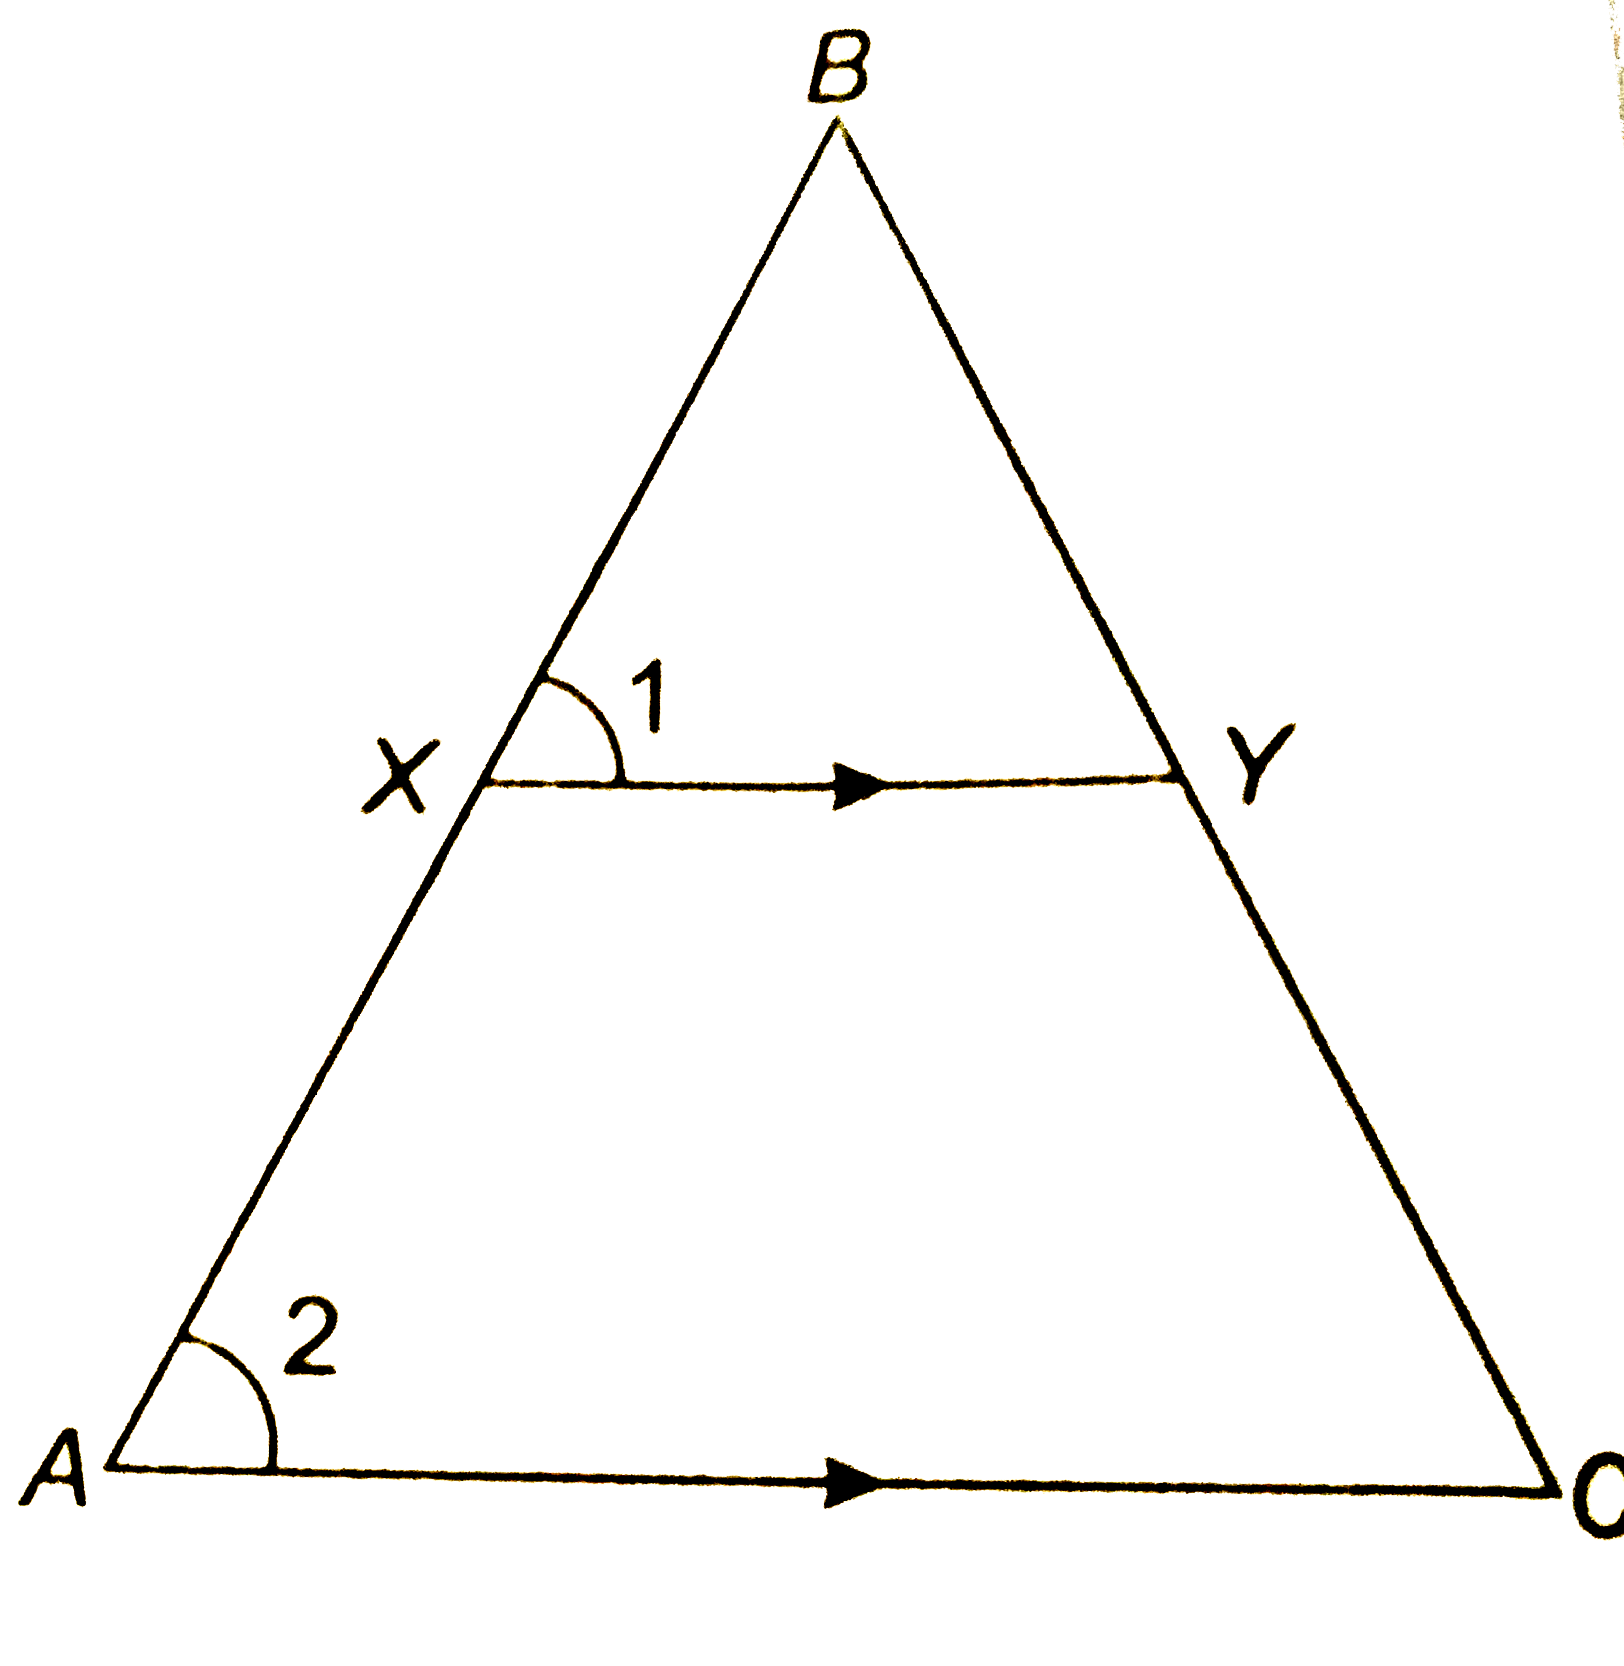 दिए हुए चित्र में रेखाखण्ड XY त्रिभुज  ABC की भुजा  AC के समान्तर है तथा इस त्रिभुज को वह बराबर क्षेत्रफलों वाले दो भागो में विभाजित करता है अनुपात  (AY)/(AB) ज्ञात कीजिये